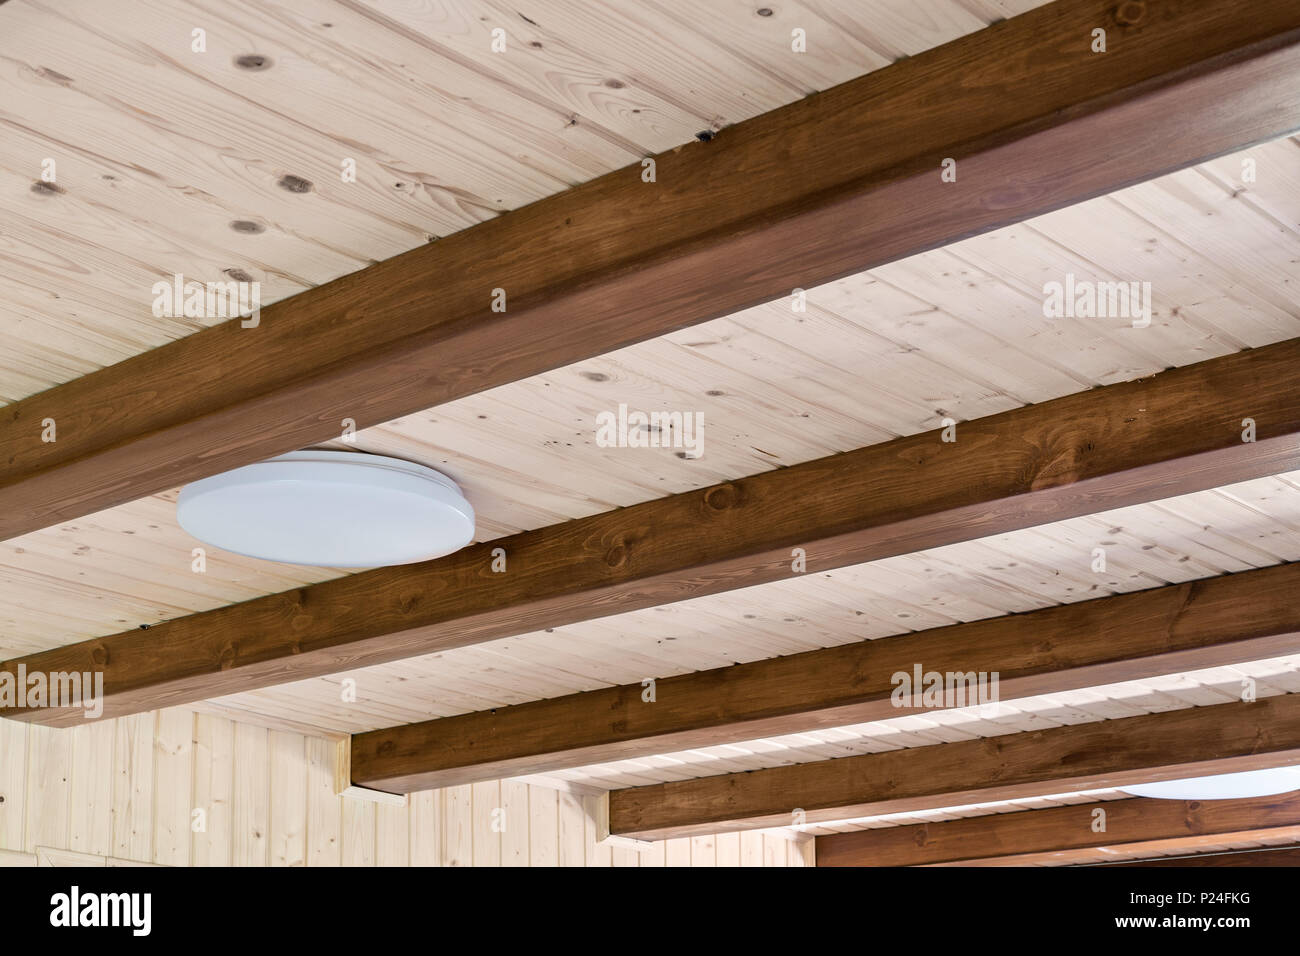 Casa rústica con techo de vigas de madera amplio apoyo. Del interior del país. Construcción materiales de decoración natural. Foto de stock